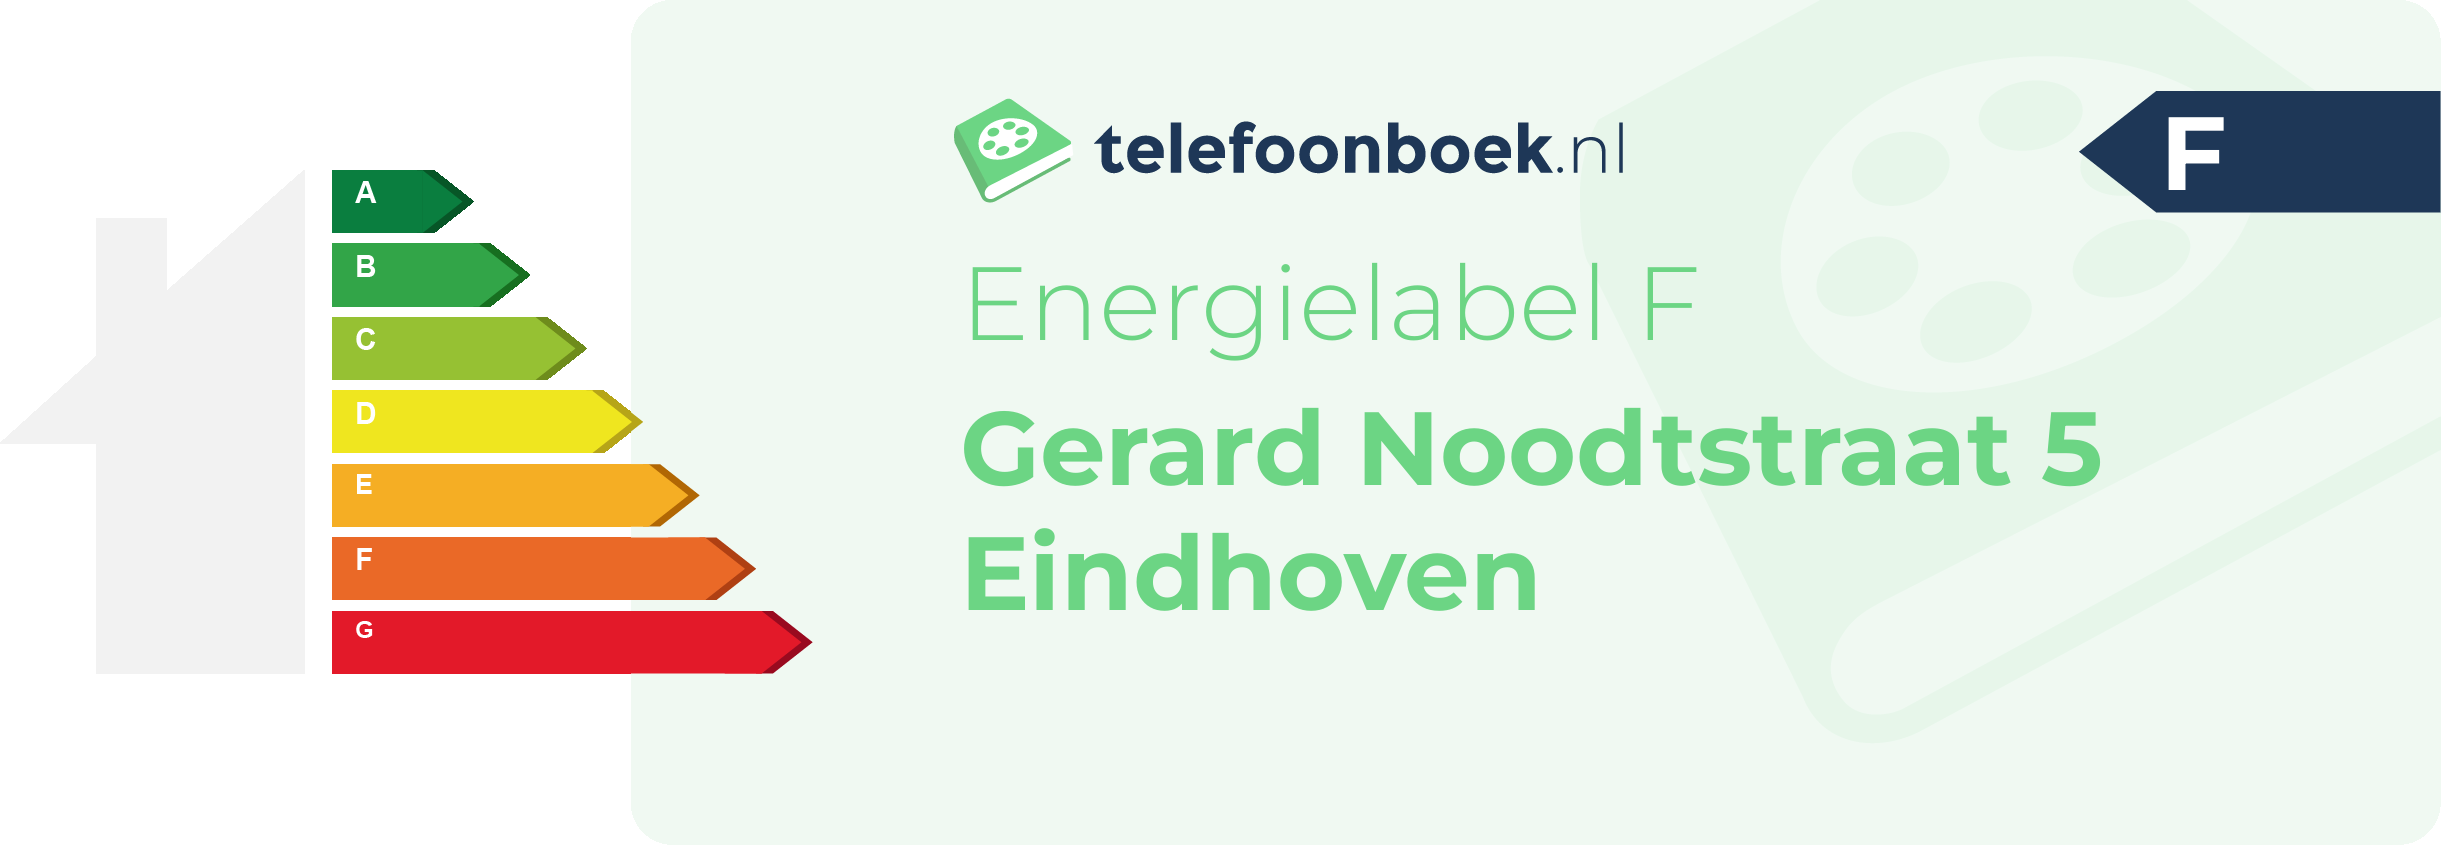 Energielabel Gerard Noodtstraat 5 Eindhoven